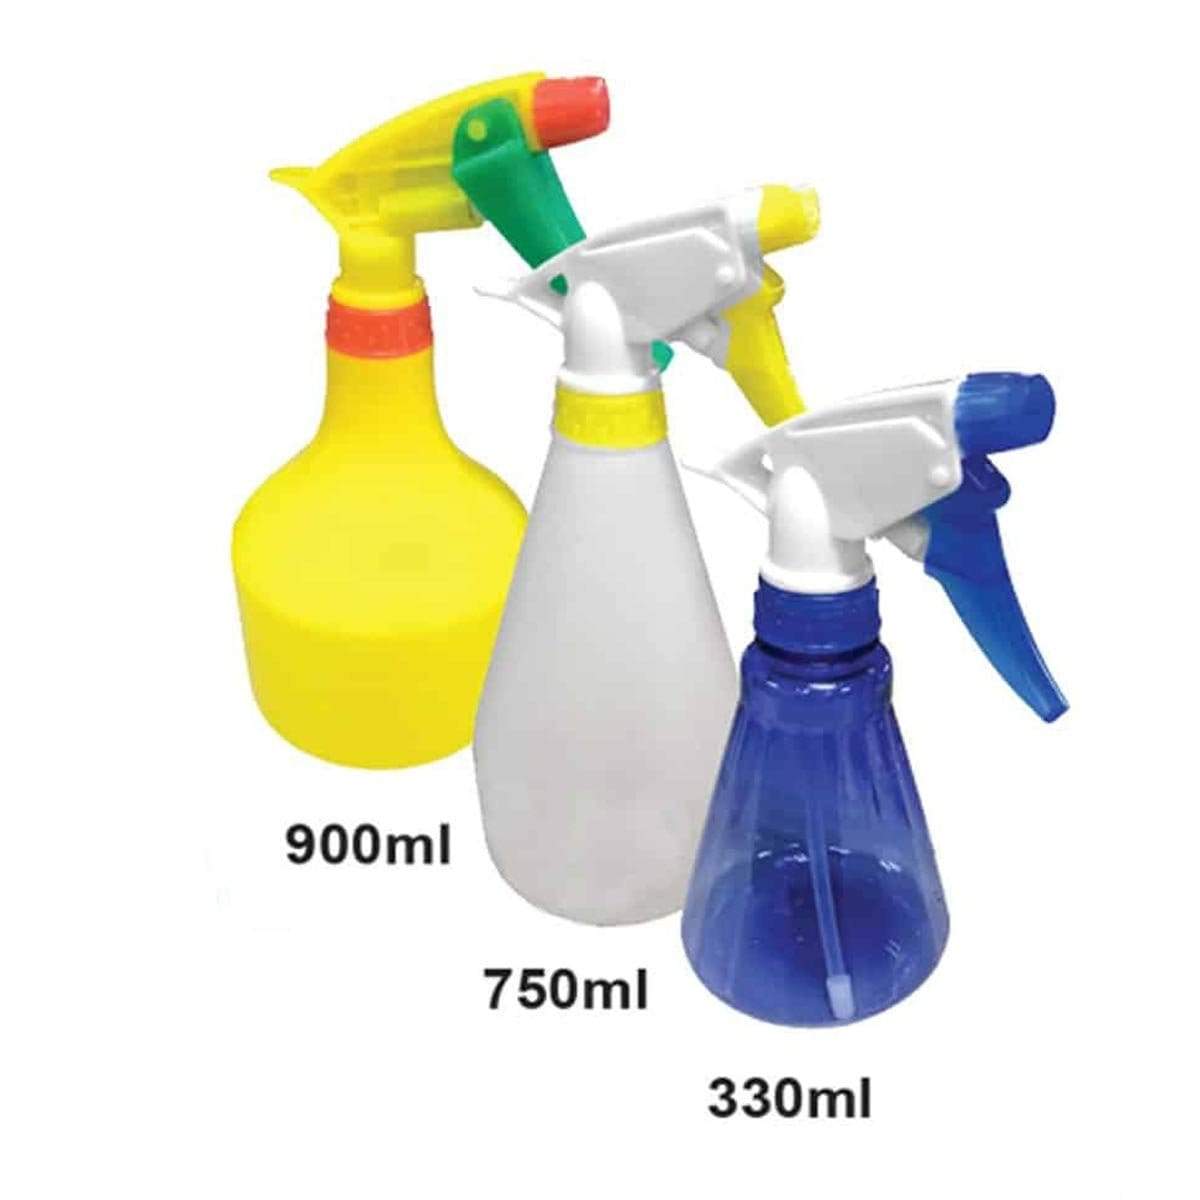 Aneka Water Sprayer Pump Garden Spray Mist Hand Trigger Water Sprayer 330ml ITS330